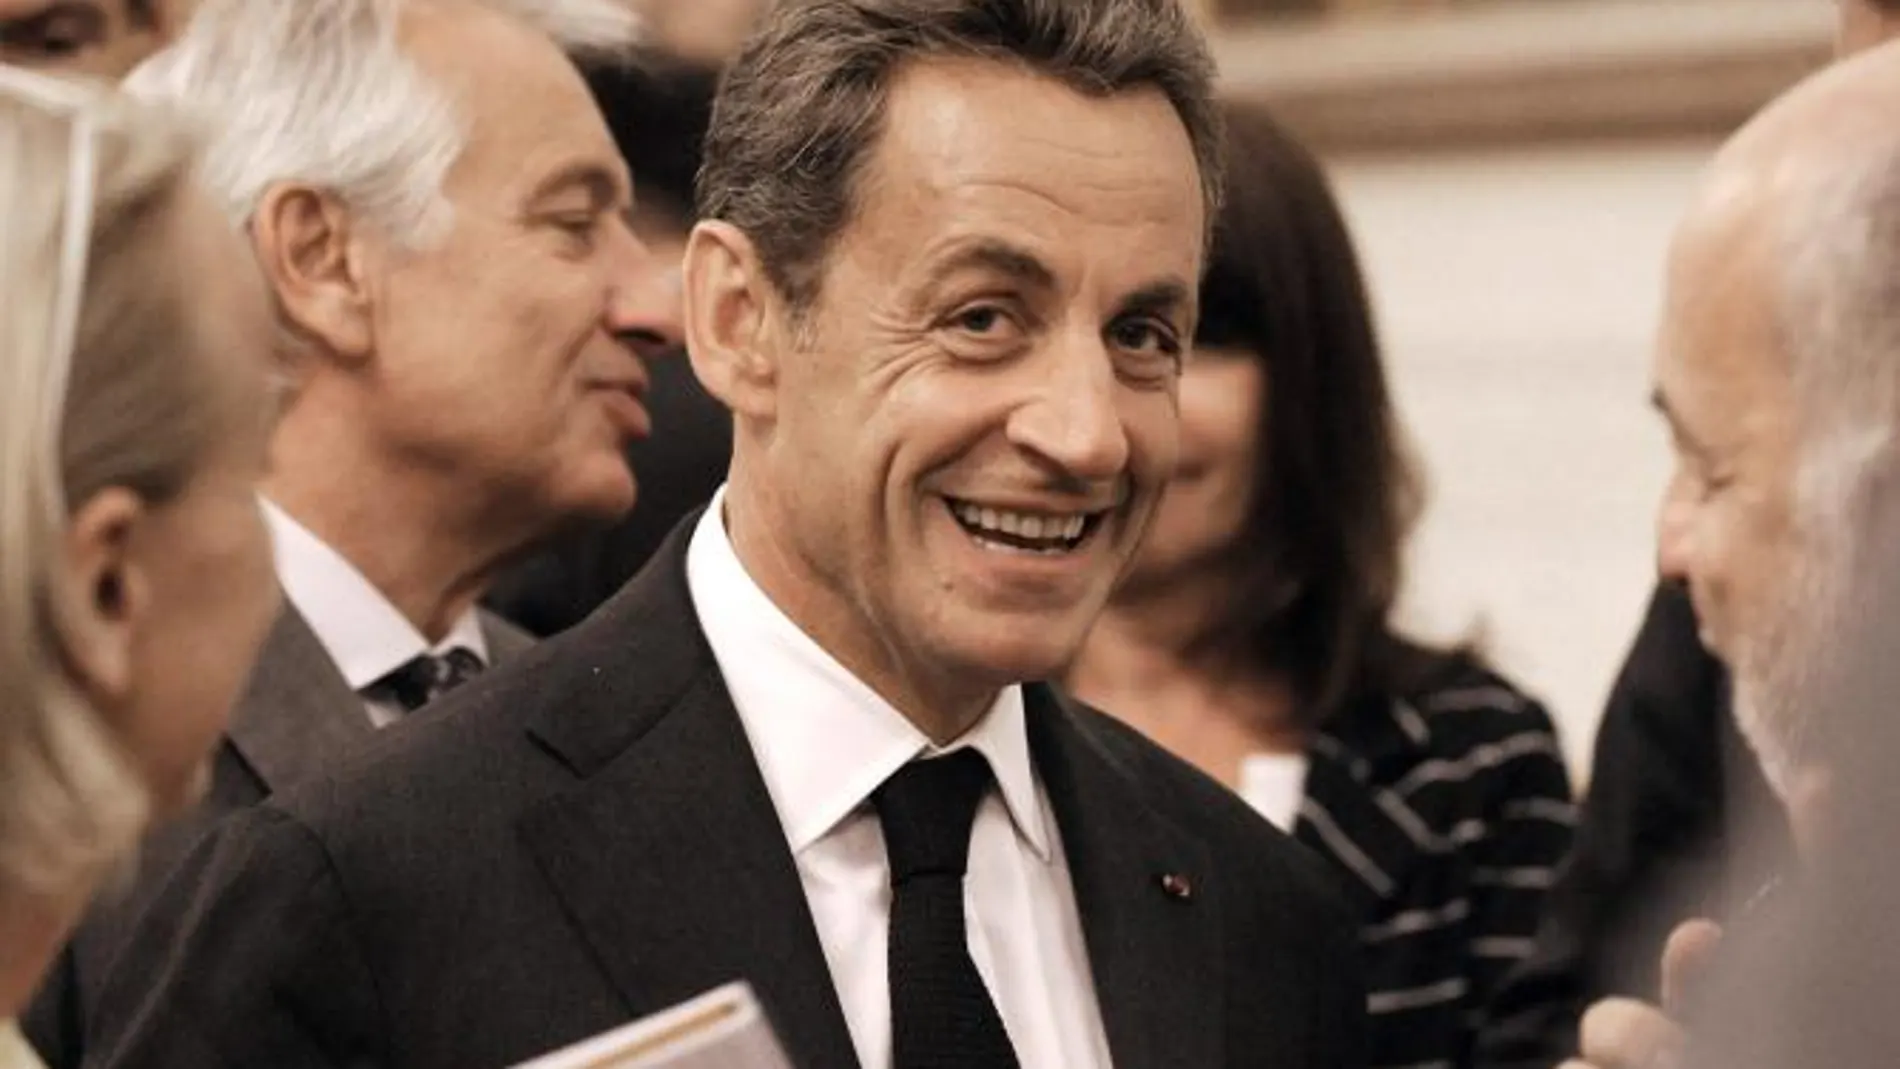 Una juez del caso Bettancourt acusa a Sarkozy de haber recibido dinero negro